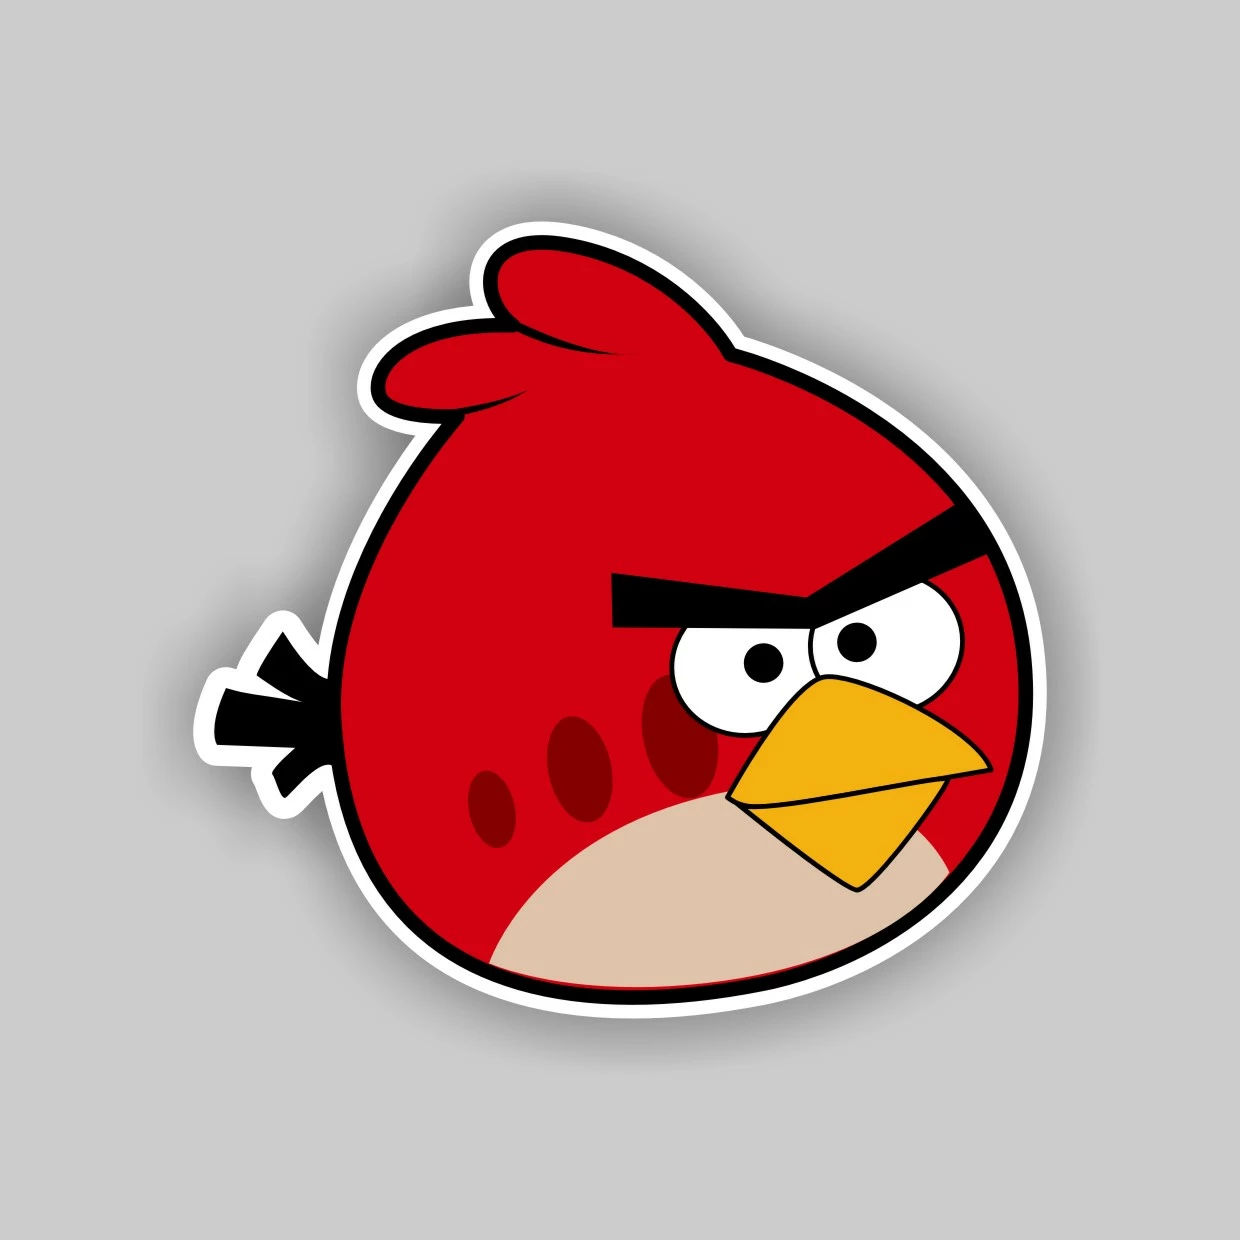 Воздушные шары Angry Birds